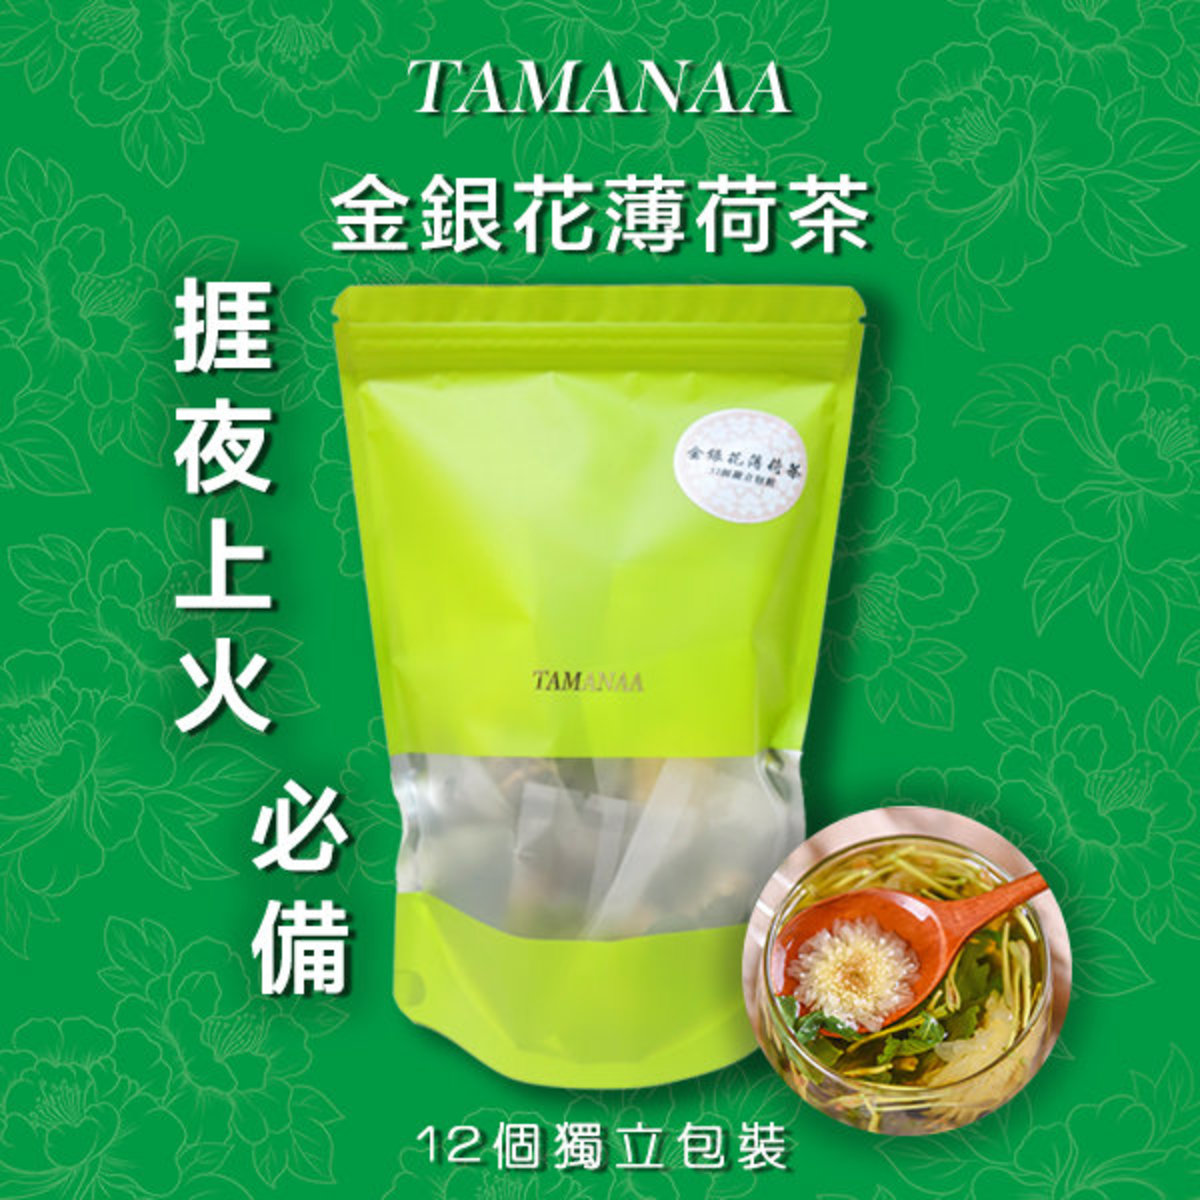 Tamanaa 捱夜熱氣 金銀花薄荷茶花茶12個獨立包裝入 販量裝 Hktvmall 香港最大網購平台